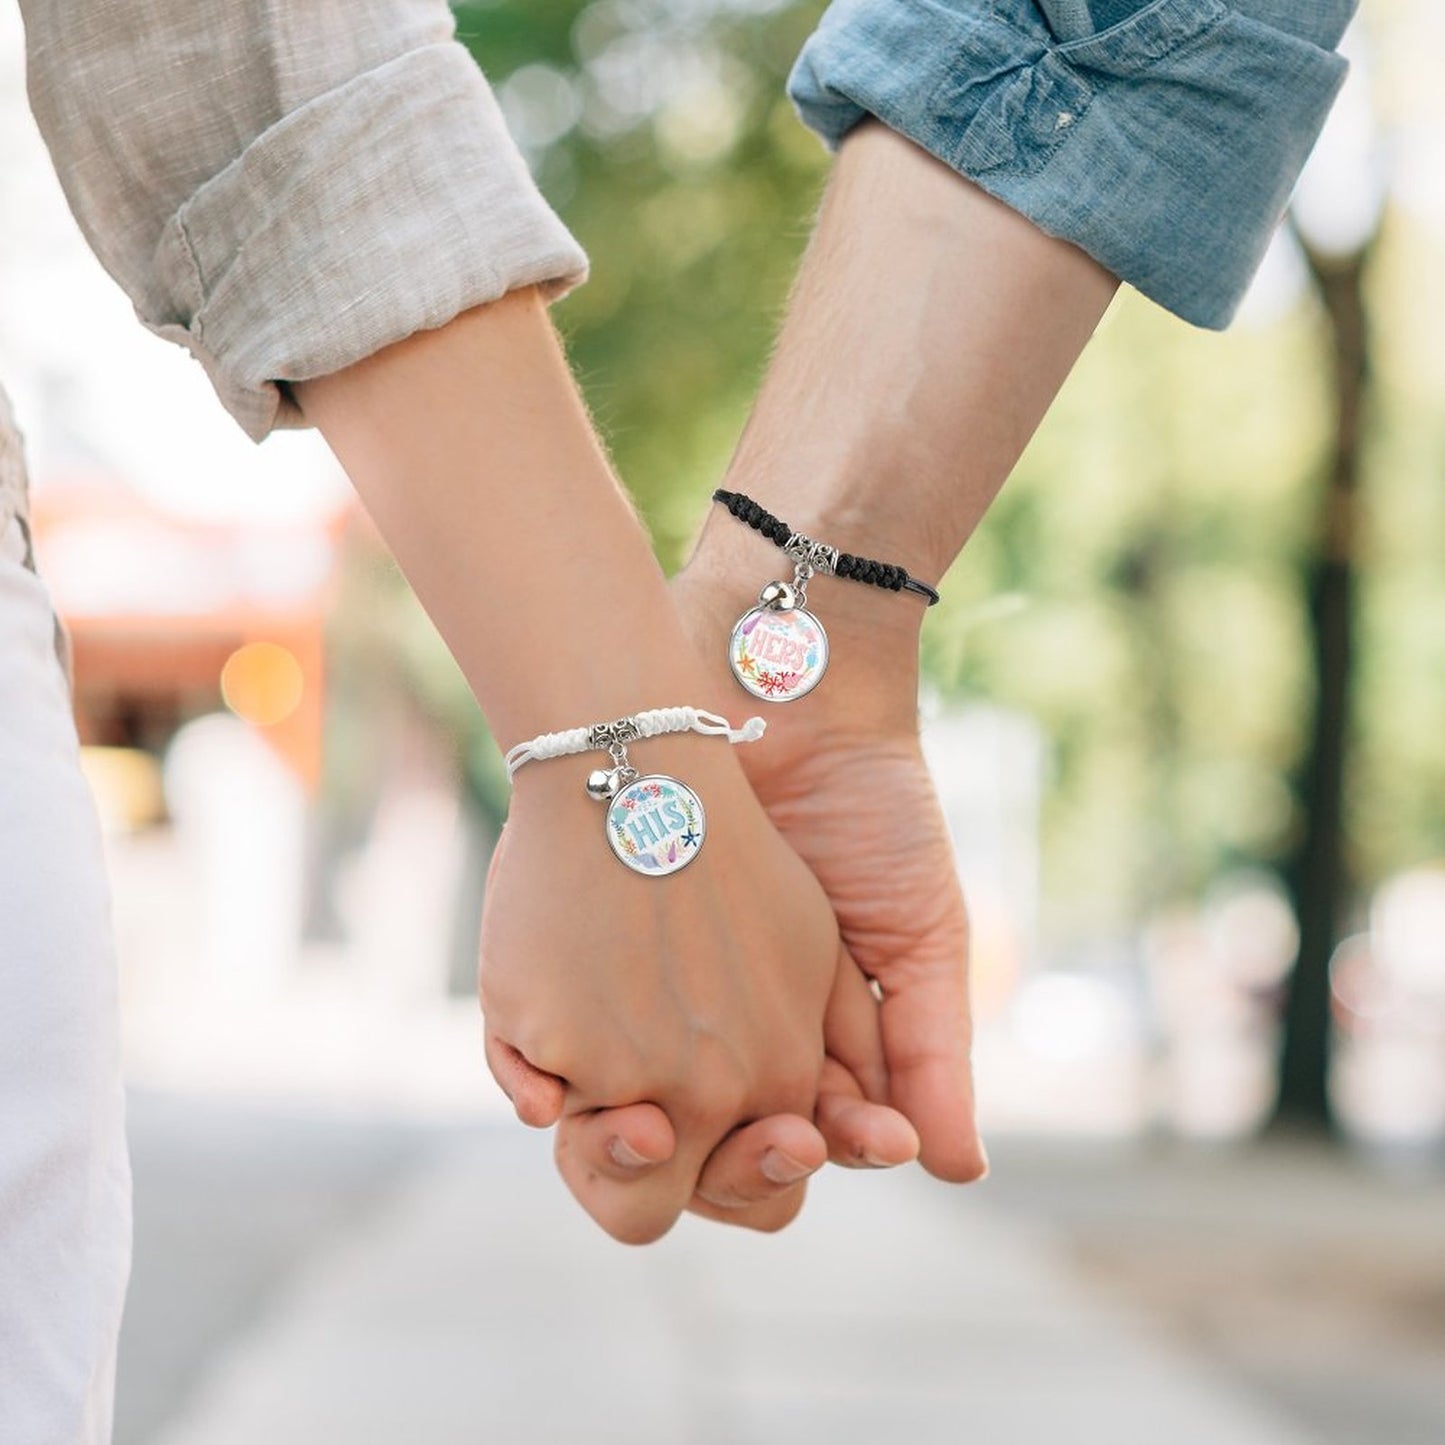 Online DIY Bell Bracelets for Couples